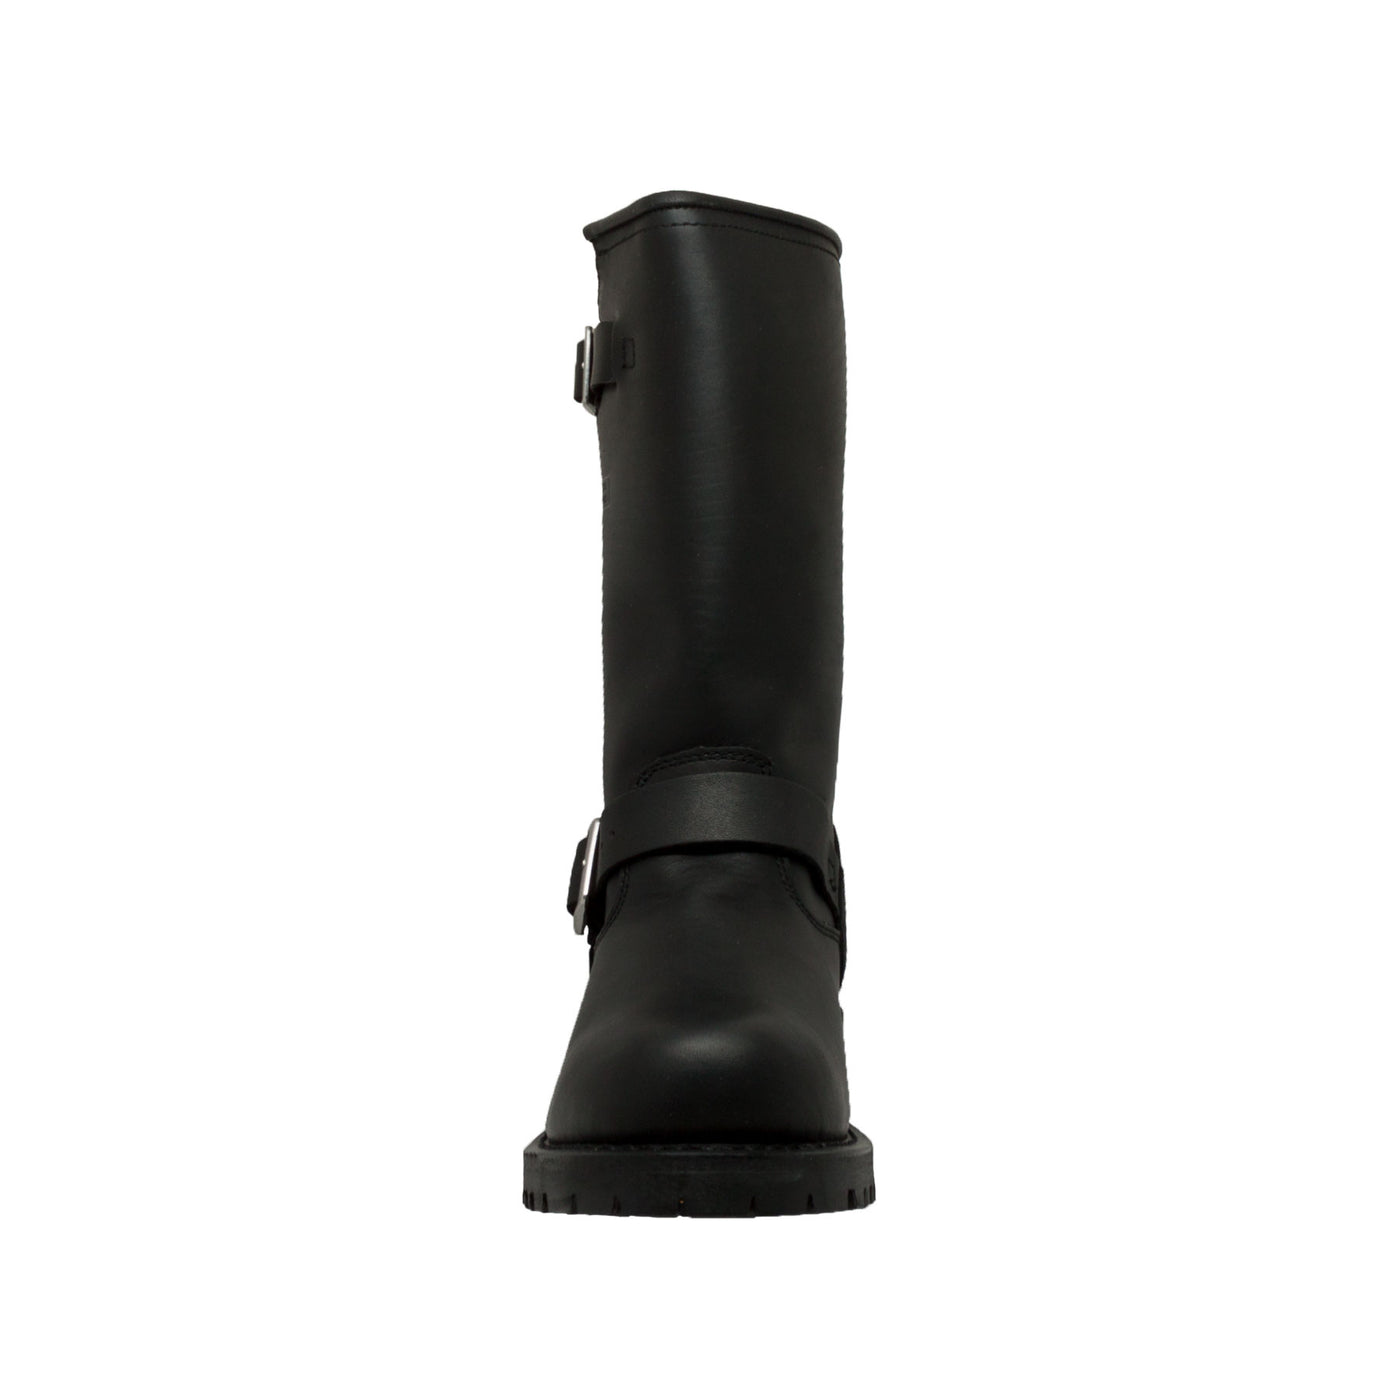 Men's 11" Engineer Boot Black - 1440 - Shop Genuine Leather men & women's boots online | AdTecFootWear